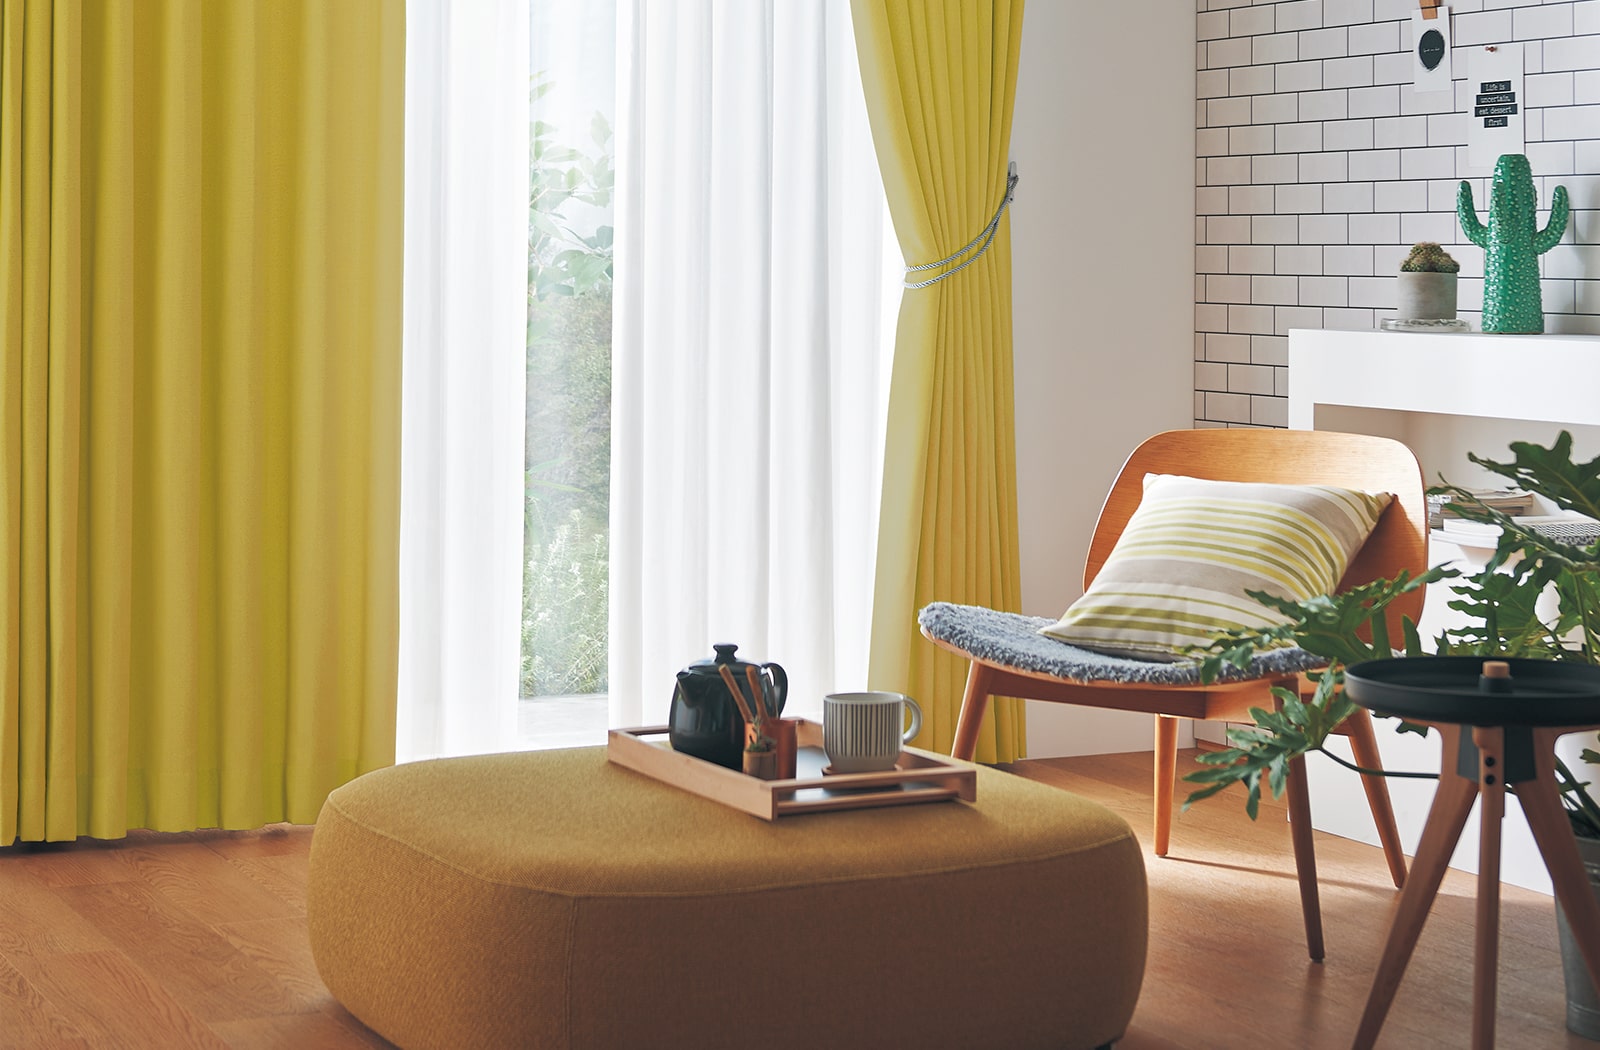 تاثیرات روانی انتخاب رنگ زرد برای پرده های اتاق خواب